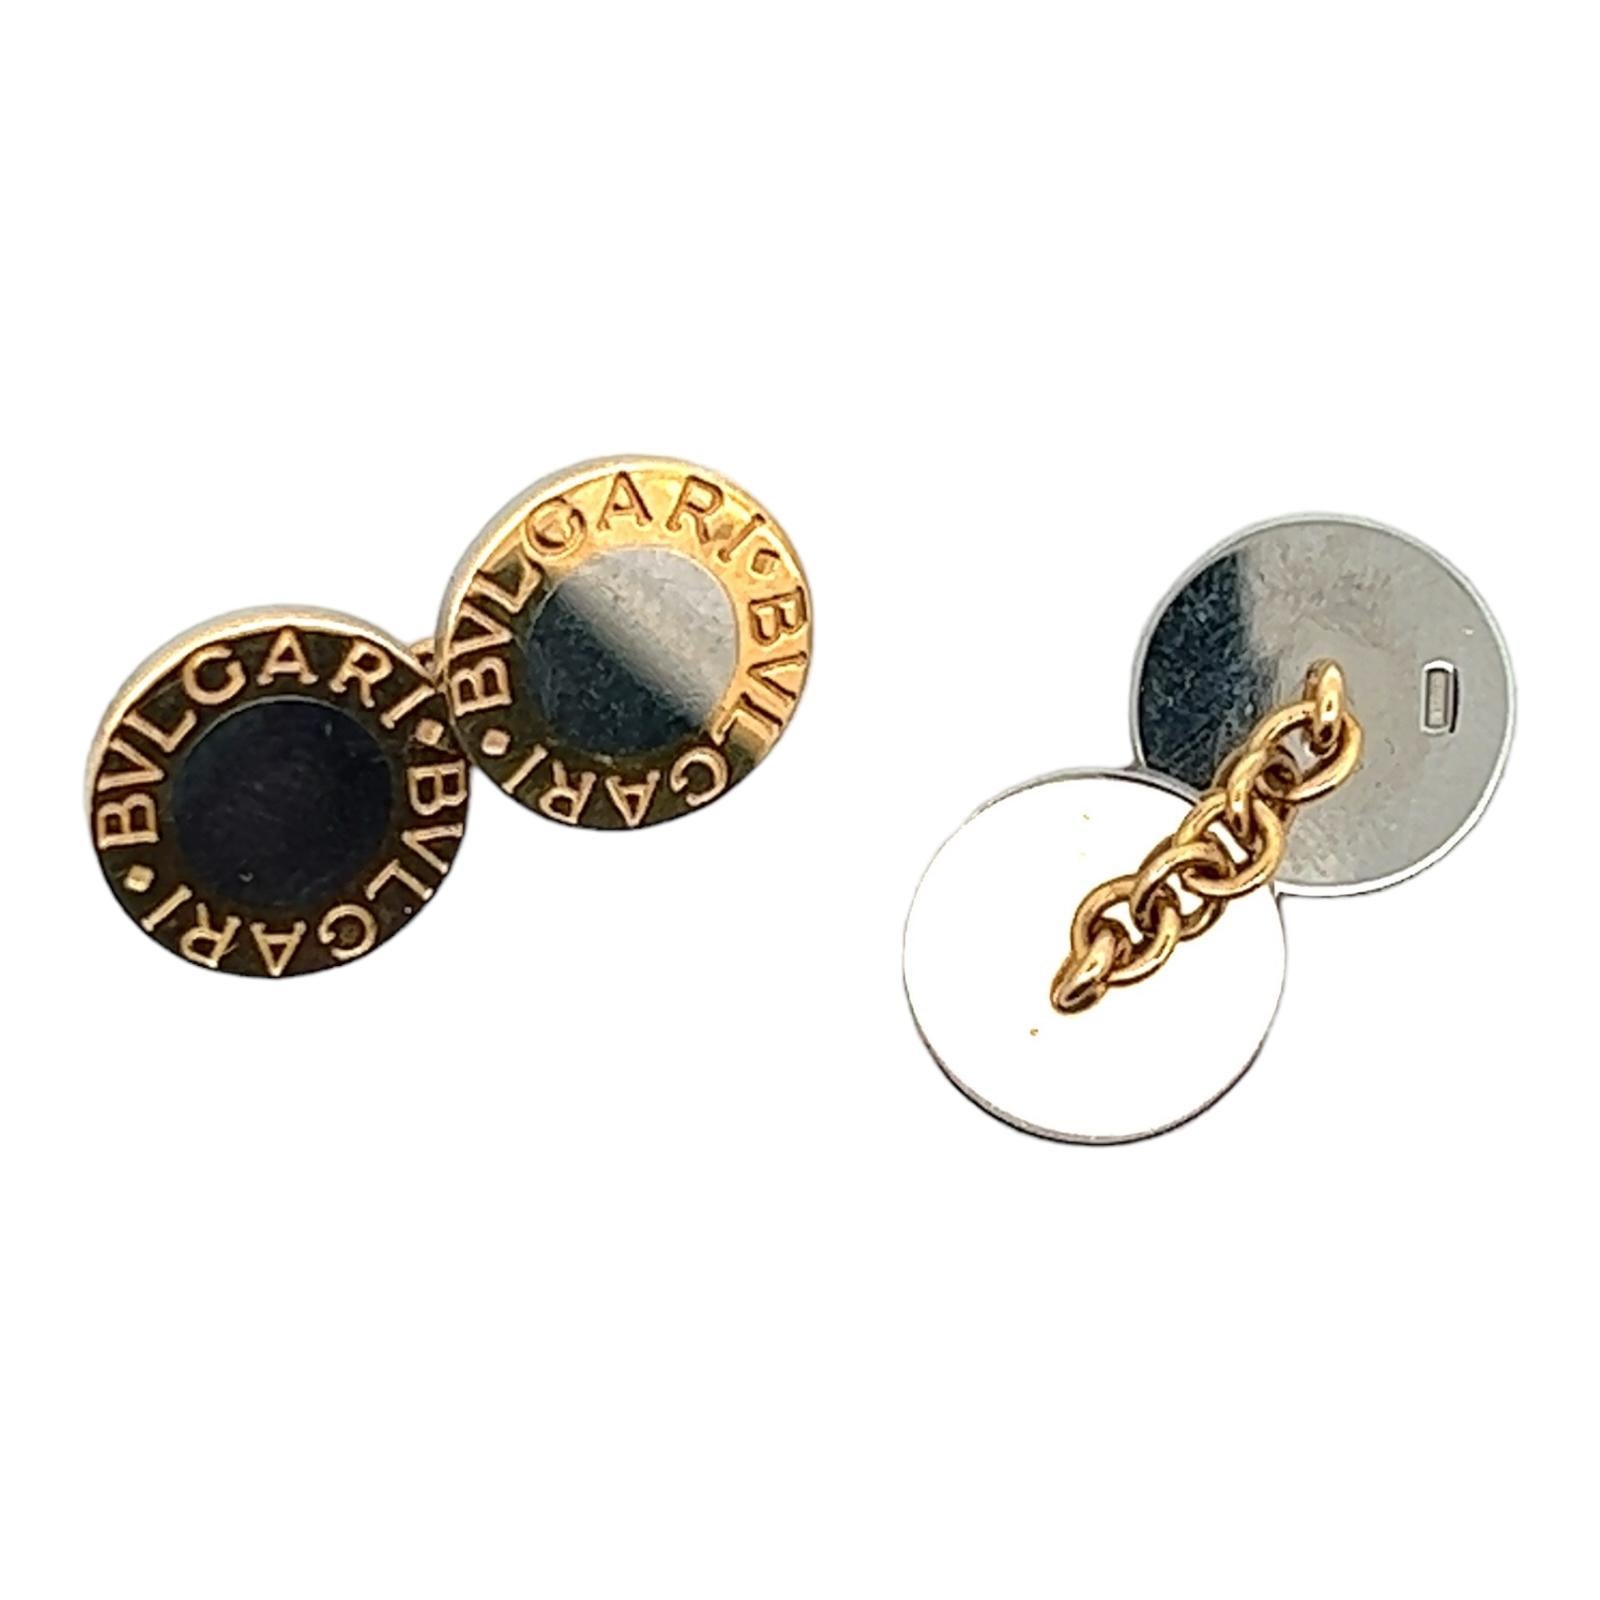 Boutons de manchette Bvlgari pour homme, en or jaune 18 carats et acier inoxydable. Les boutons de manchette en chaîne mesurent 13 x 13 mm et sont présentés dans la boîte d'origine de Bvlgari. 